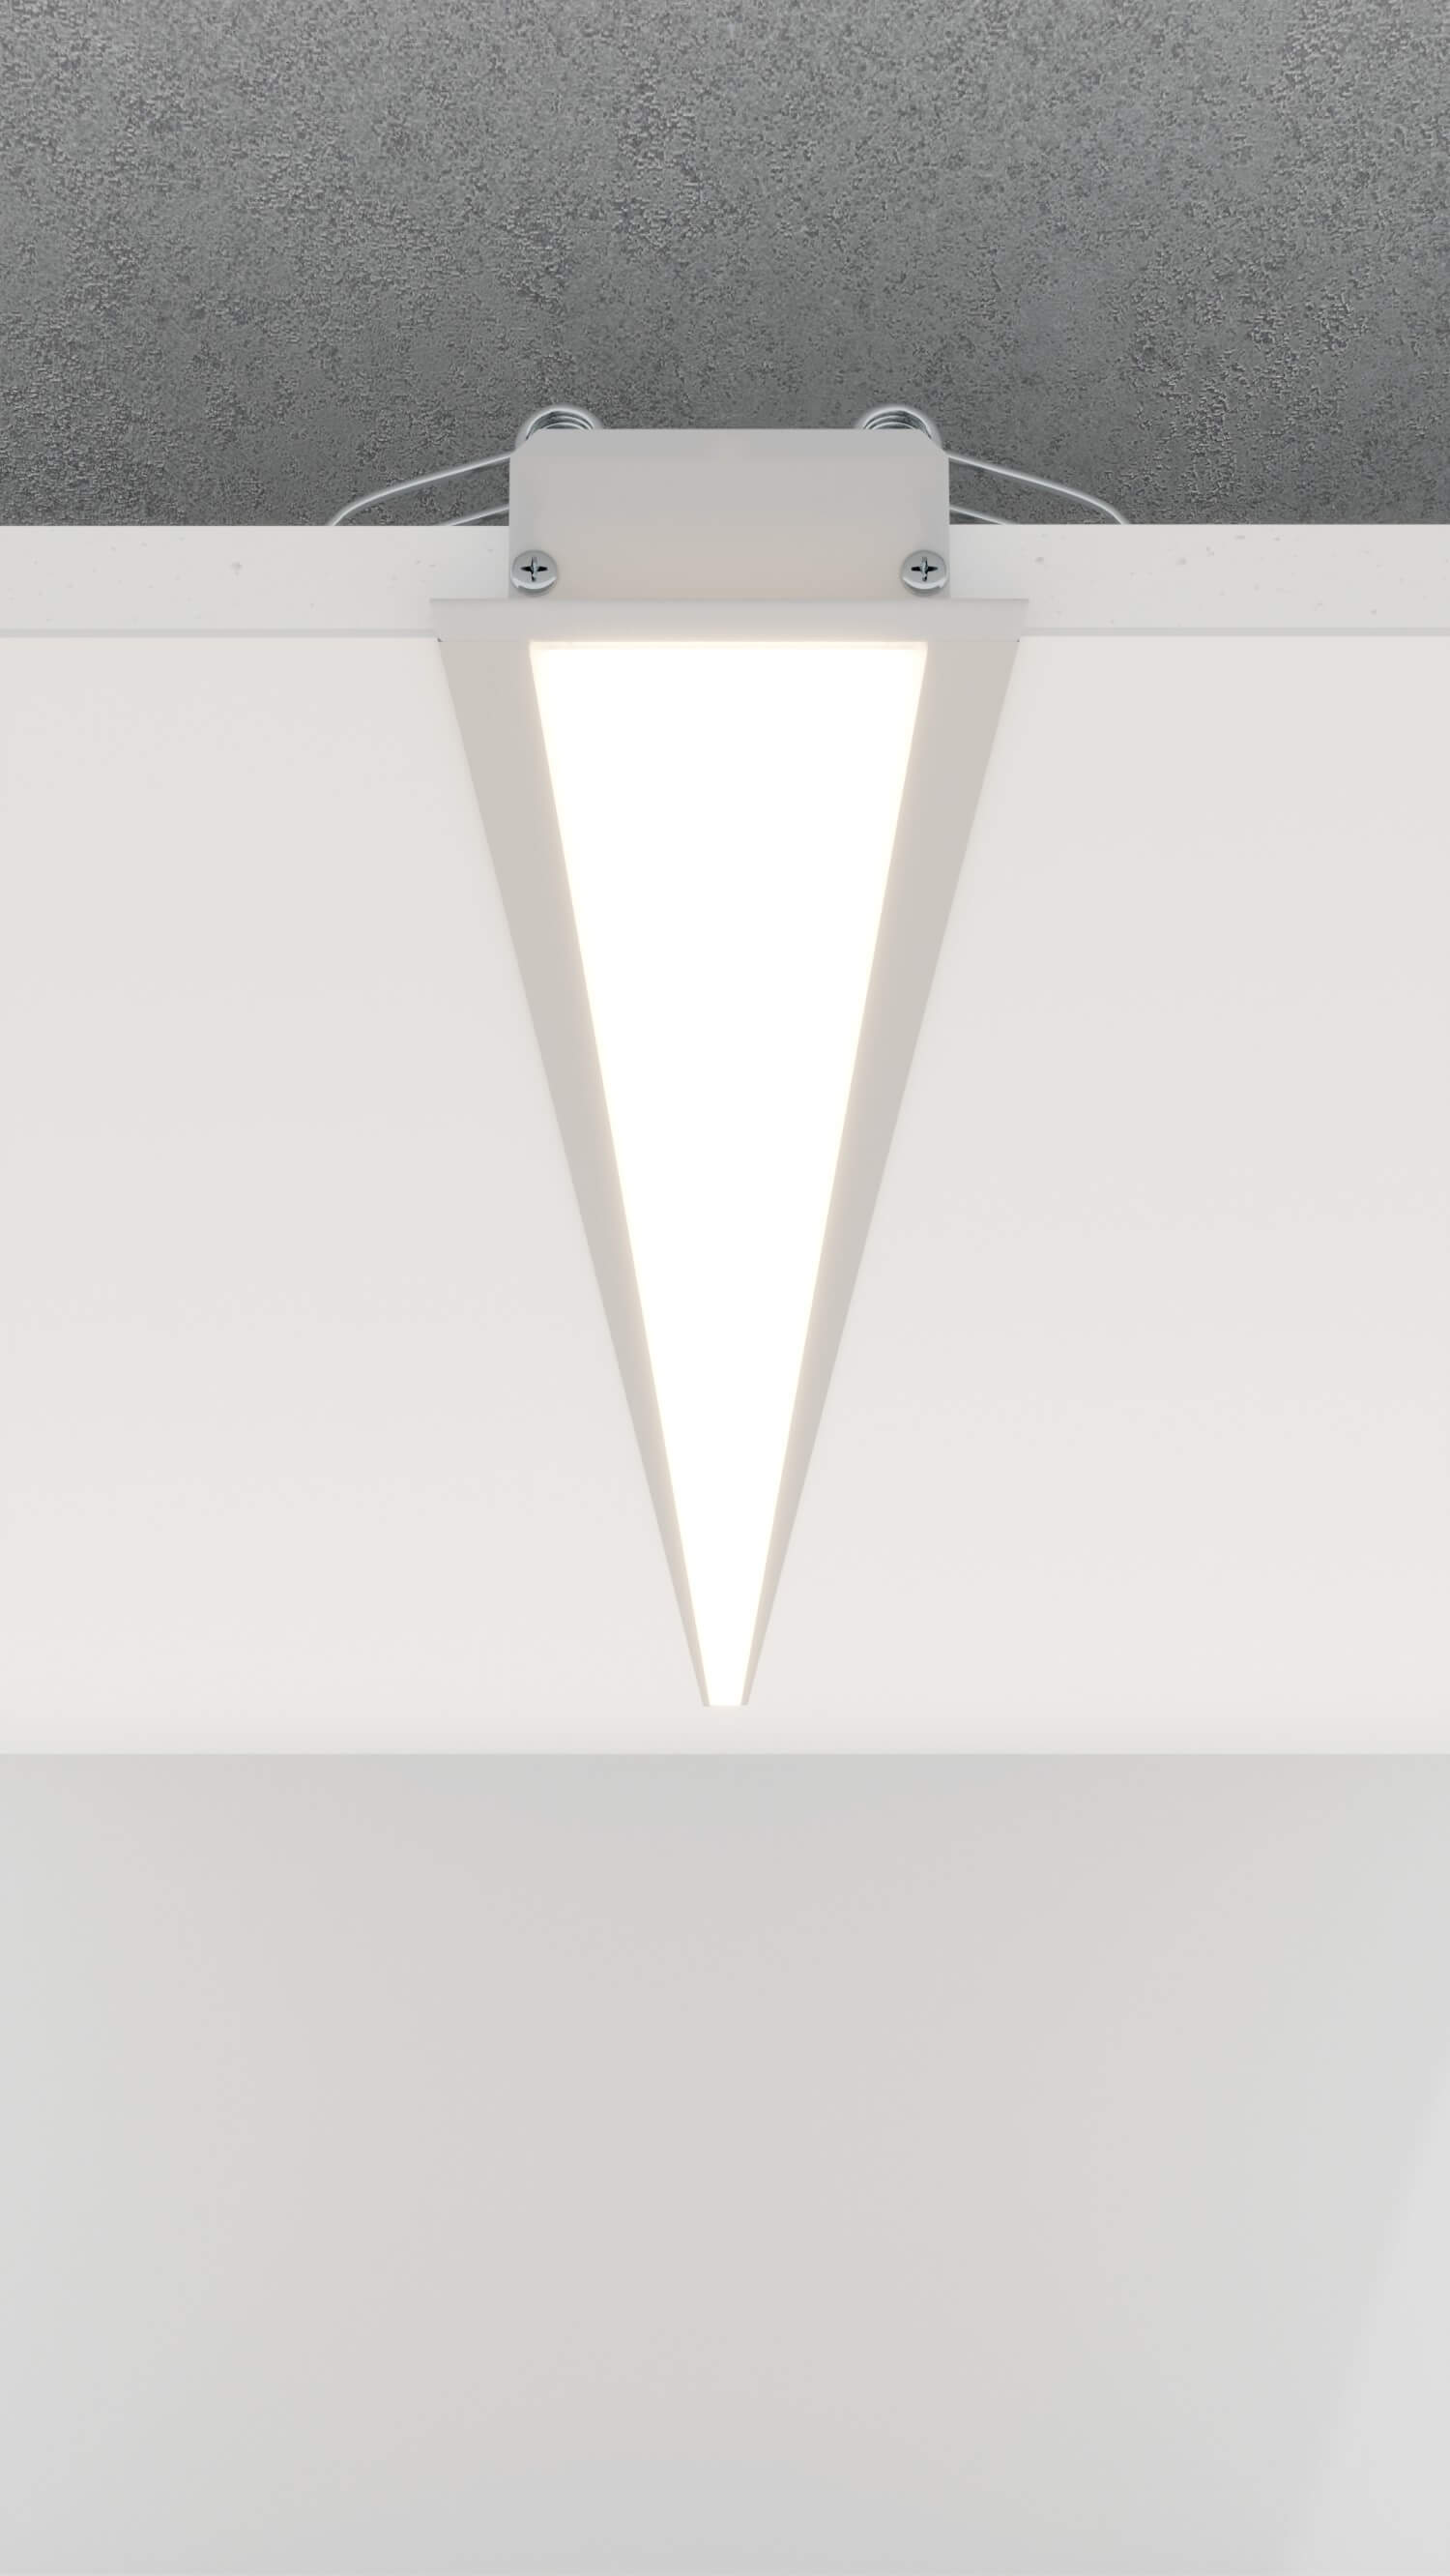 Deckenbeleuchtung an einer Rigipsdecke mit dem LED Alu Profil LARKO-50